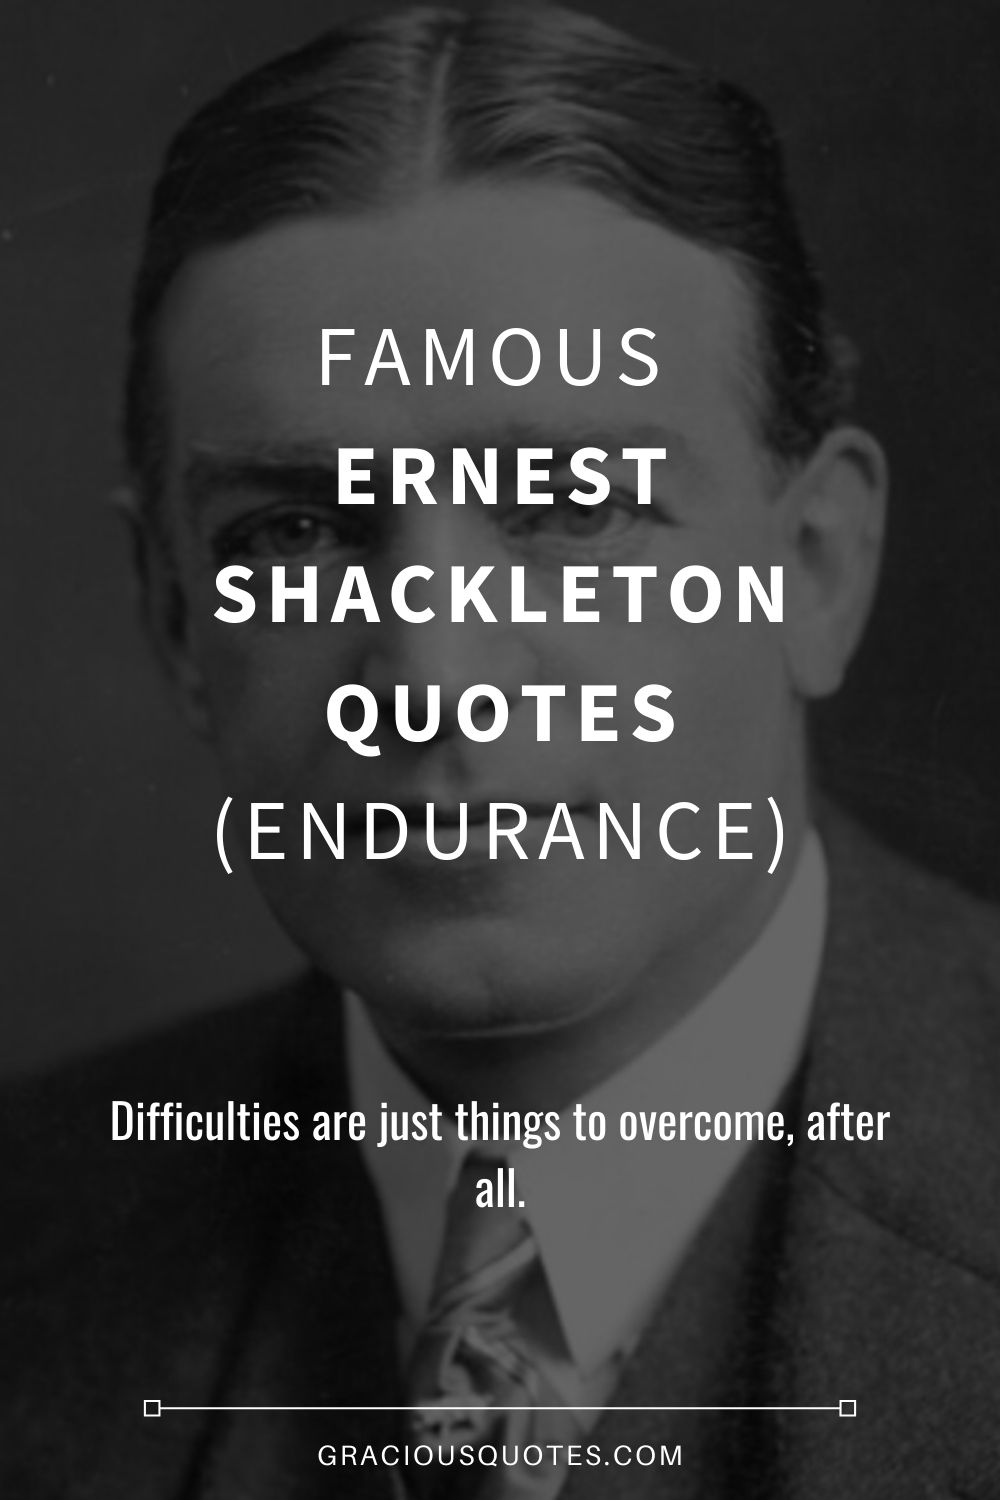 Famous Ernest Shackleton Quotes (ENDURANCE) - Gracious Quotes